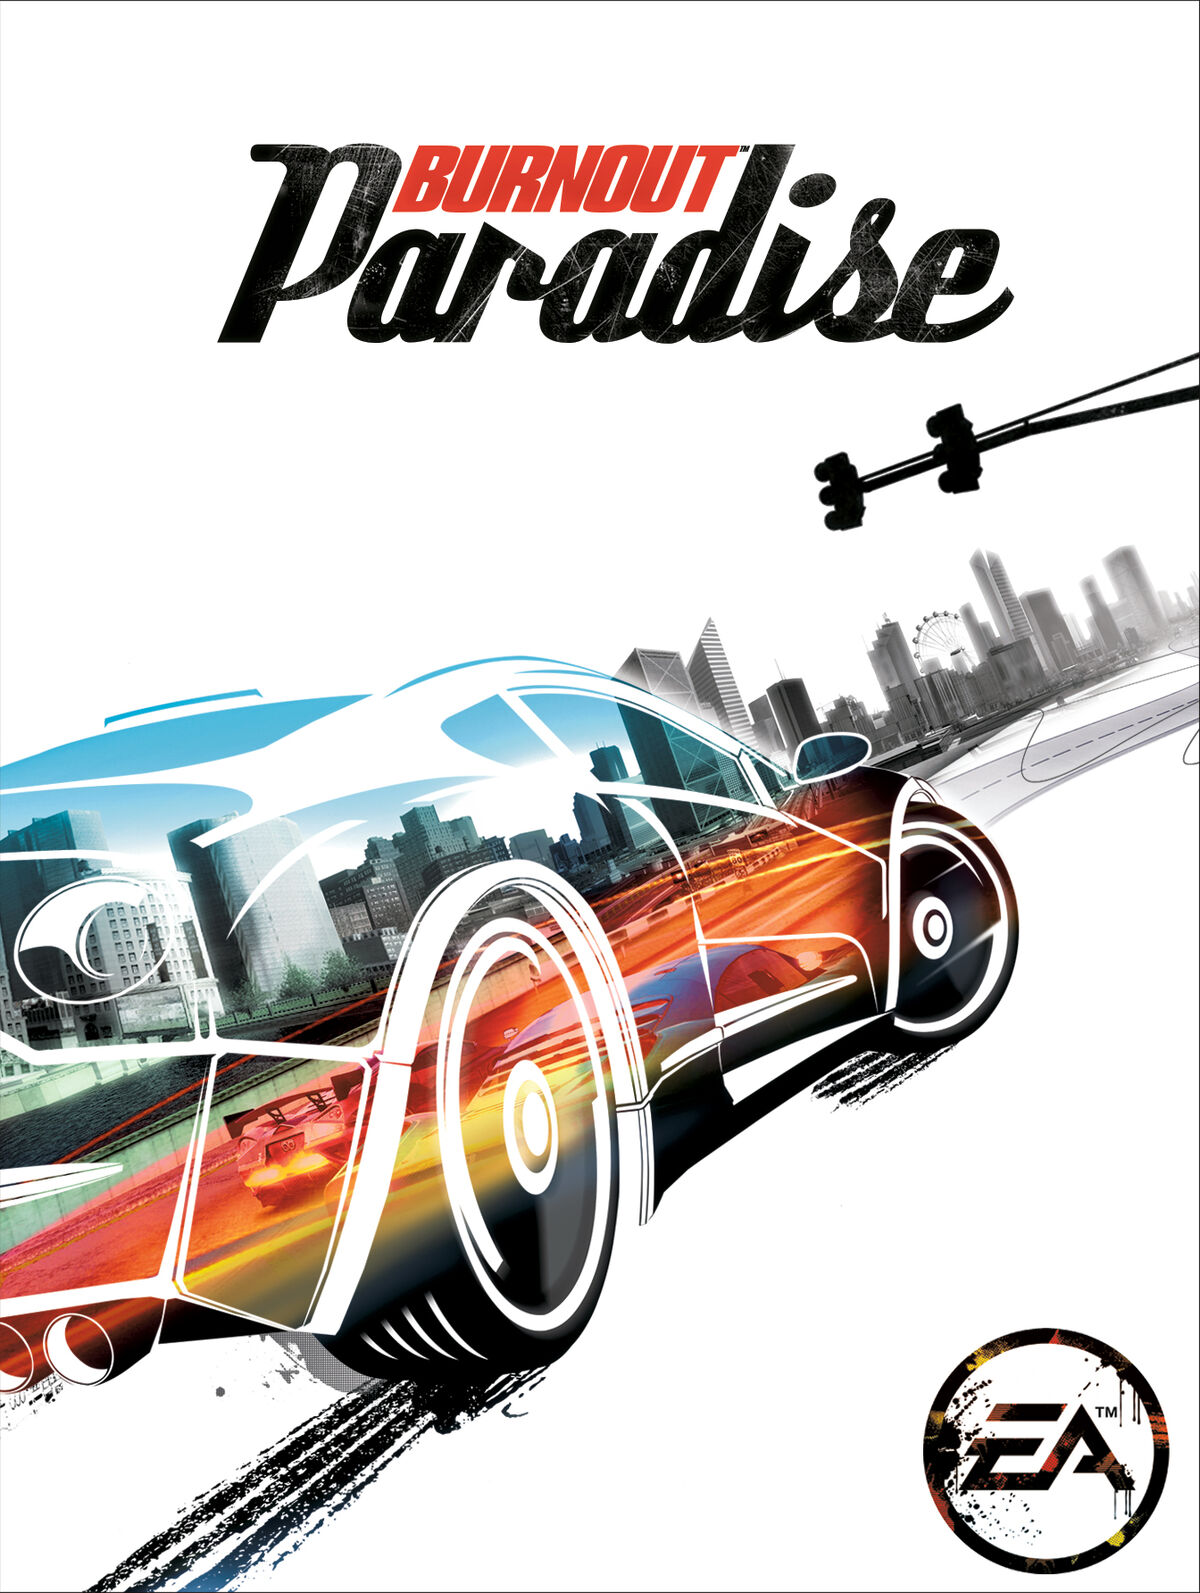 Paradise City Sign, Burnout Wiki